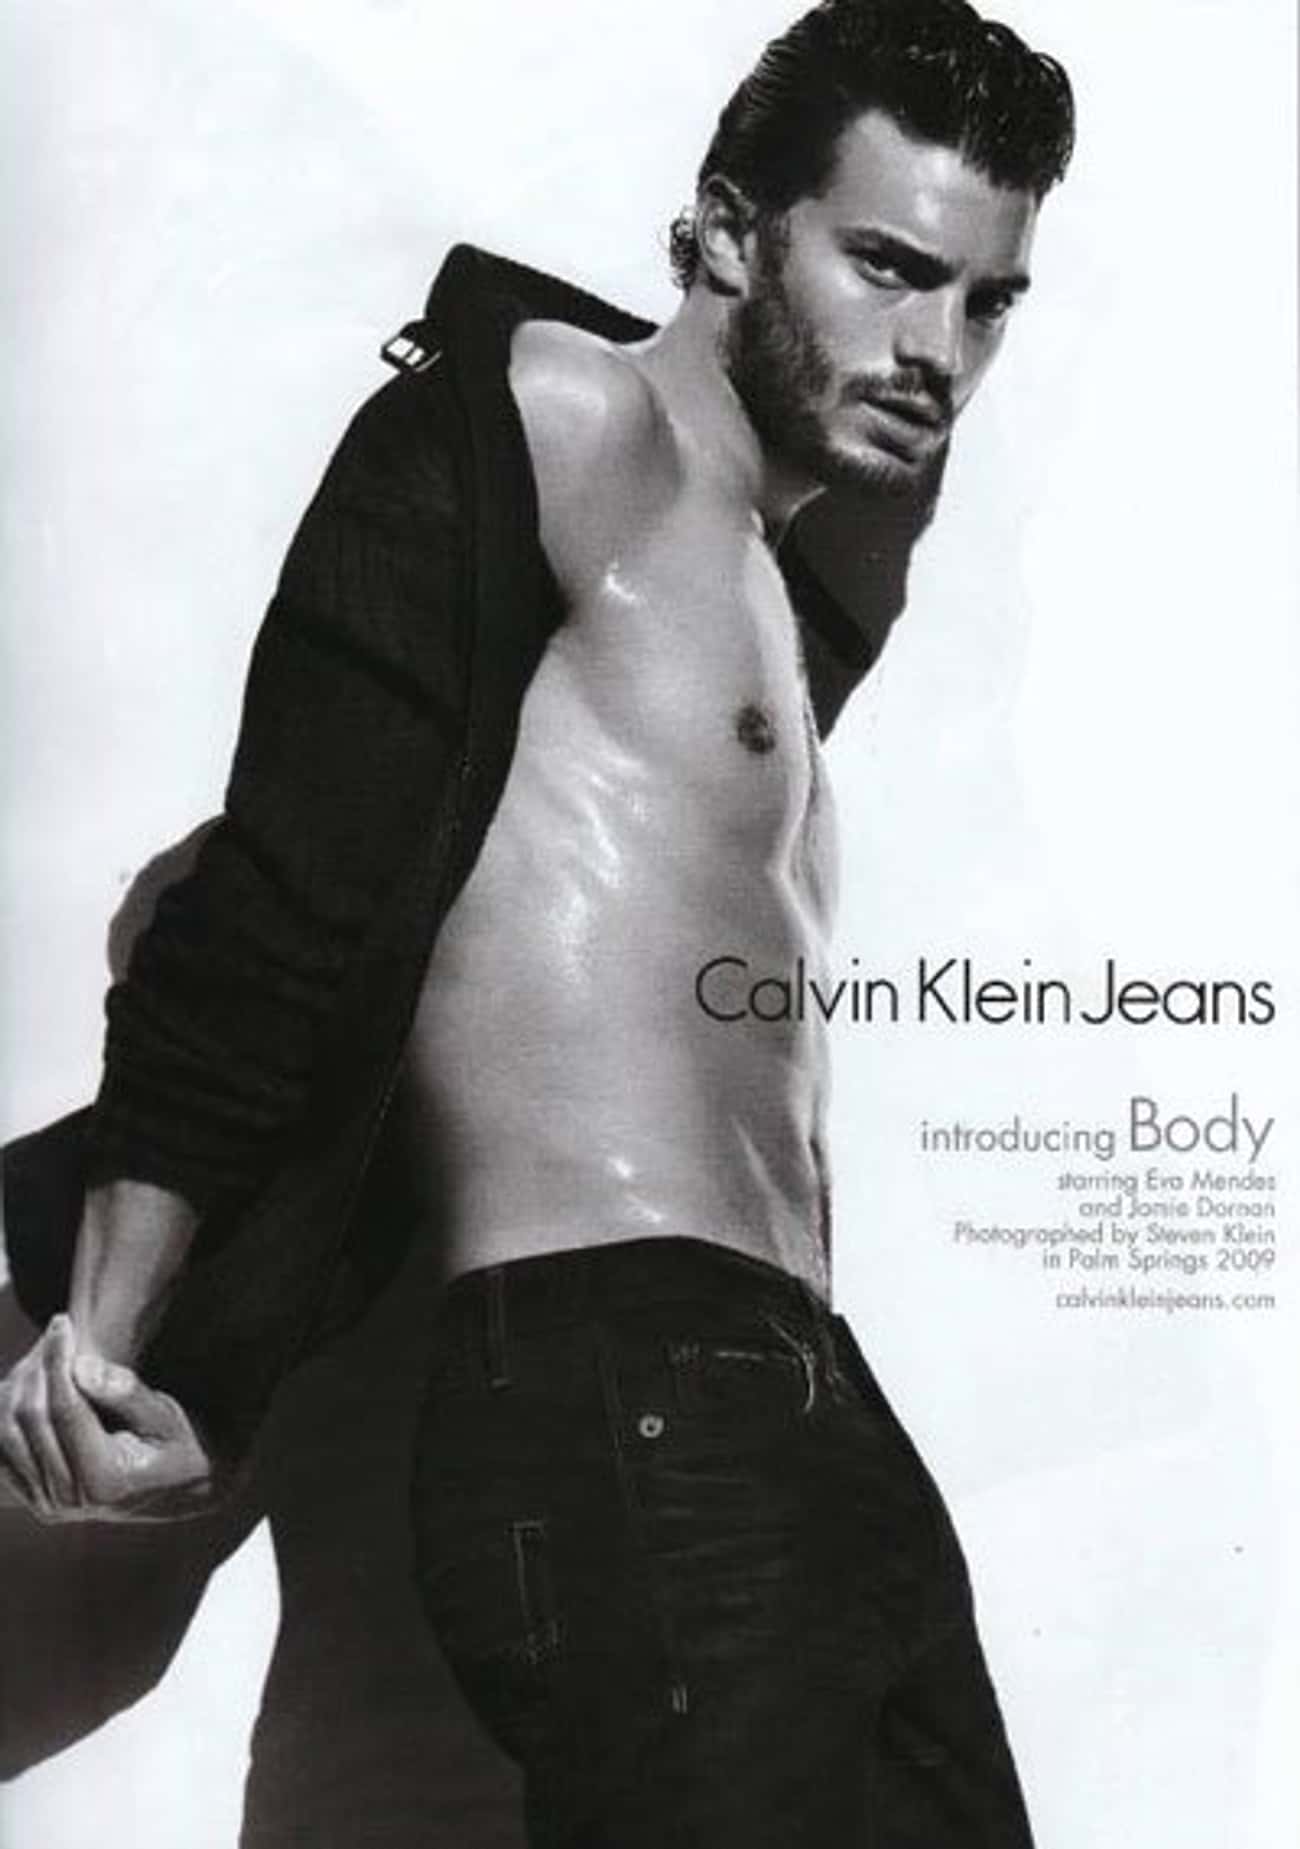 Jamie Dornan in Calvin Klein Jeans